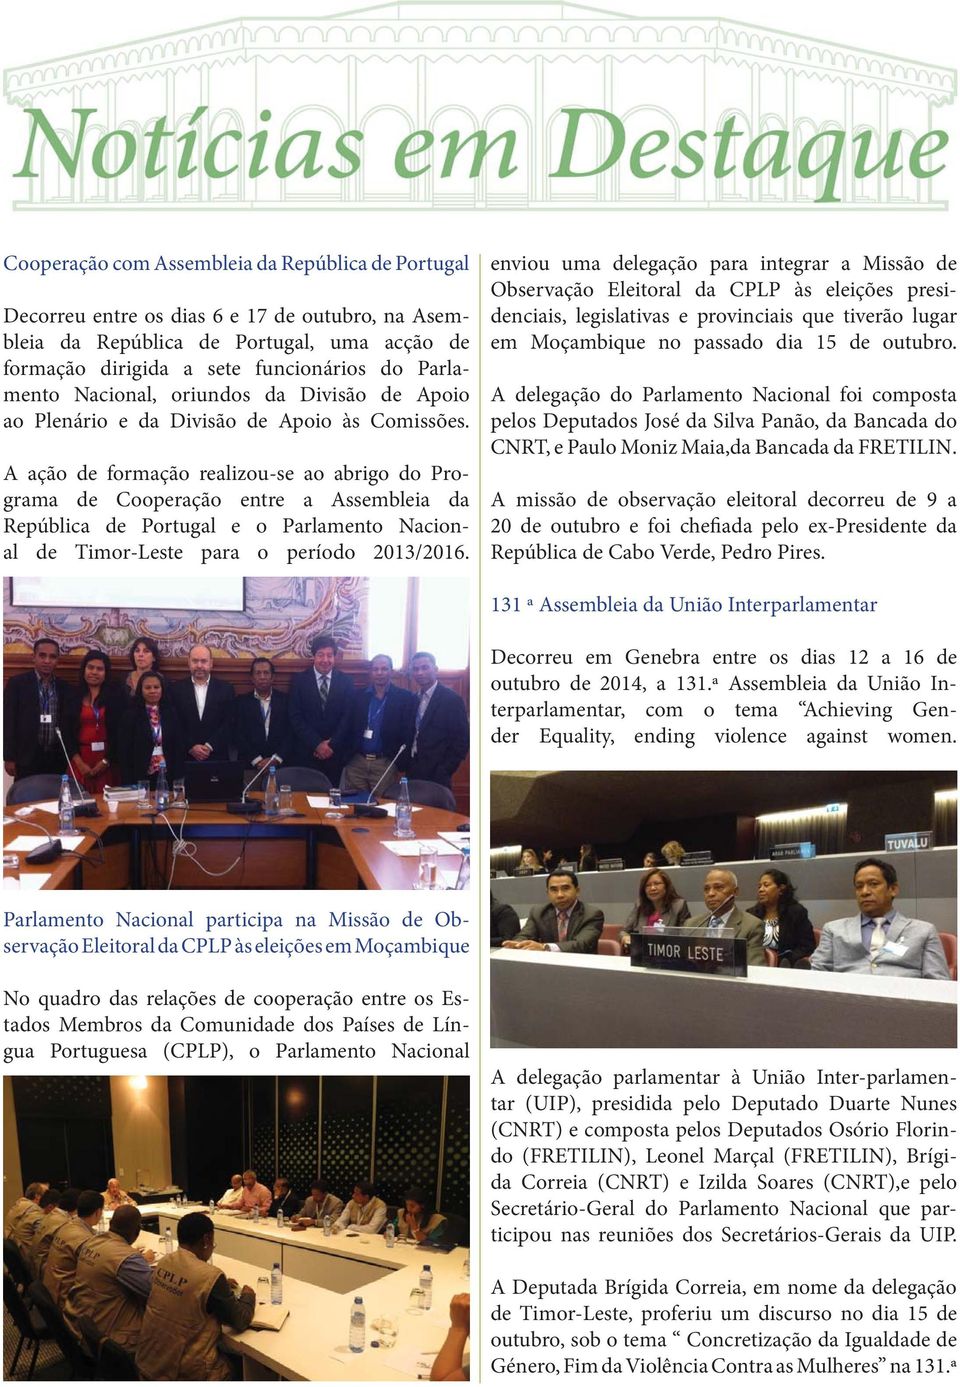 A ação de formação realizou-se ao abrigo do Programa de Cooperação entre a Assembleia da República de Portugal e o Parlamento Nacional de Timor-Leste para o período 2013/2016.